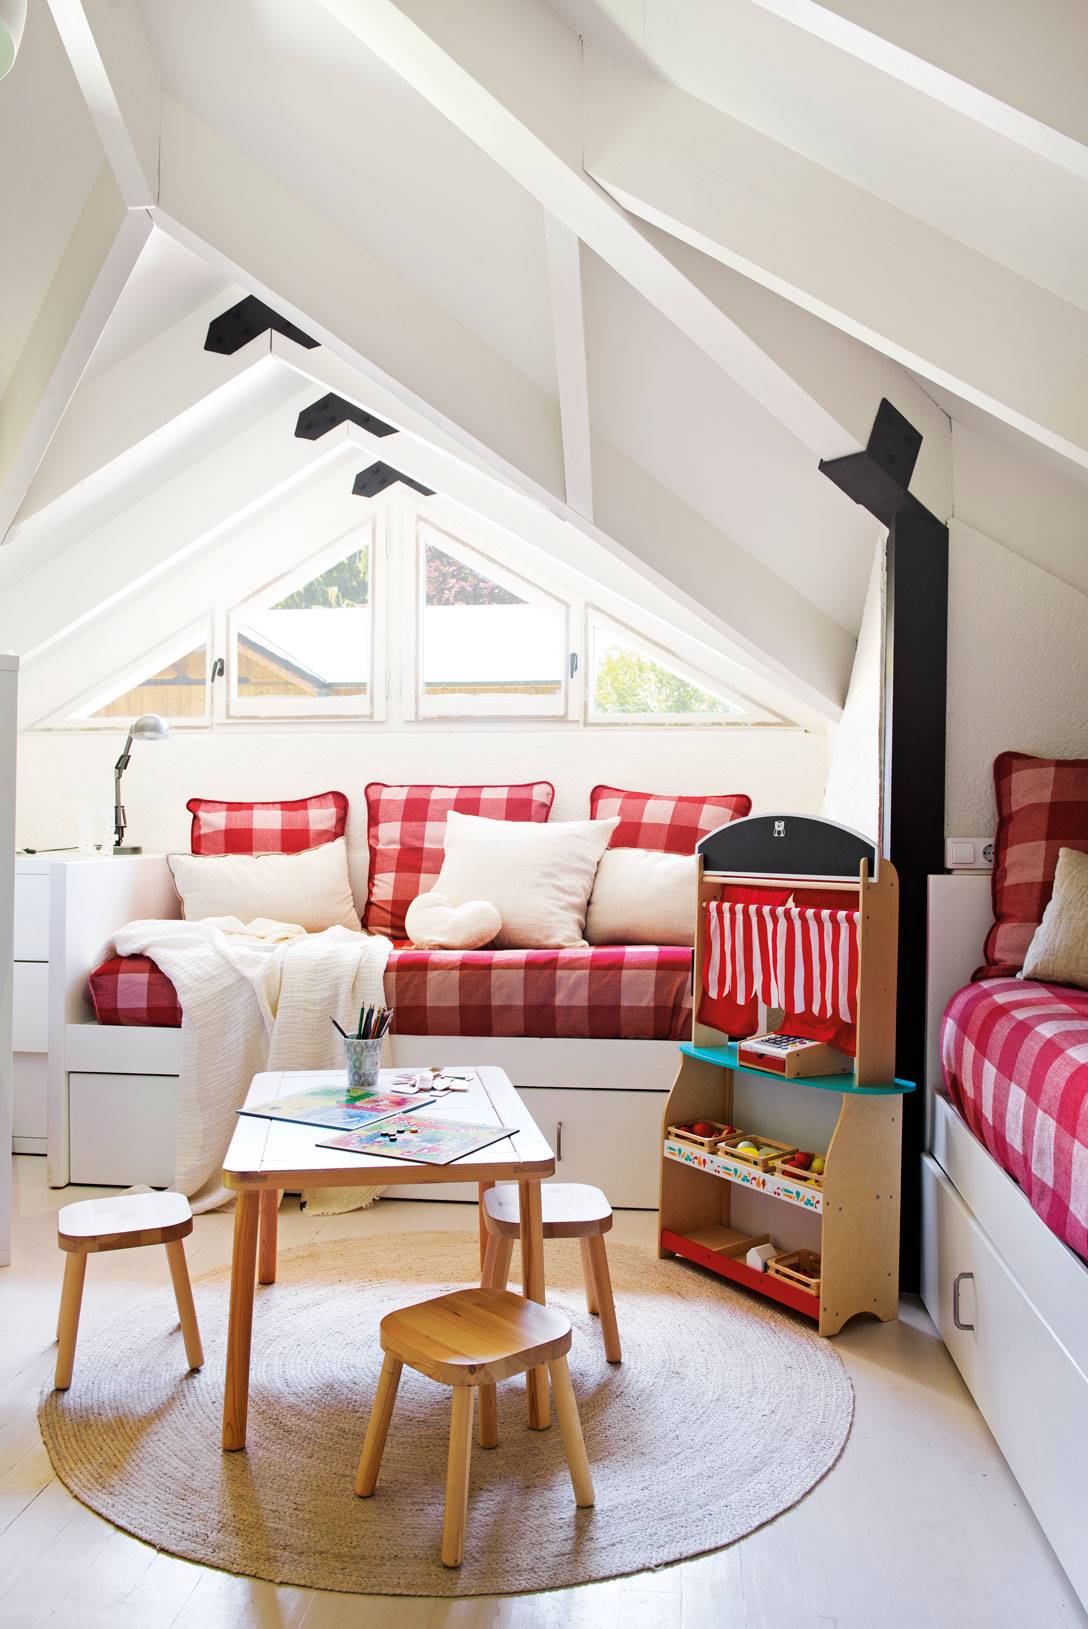 Dormitorio infantil con buhardilla en blancon y textiles vichy rojo y blanco-507345